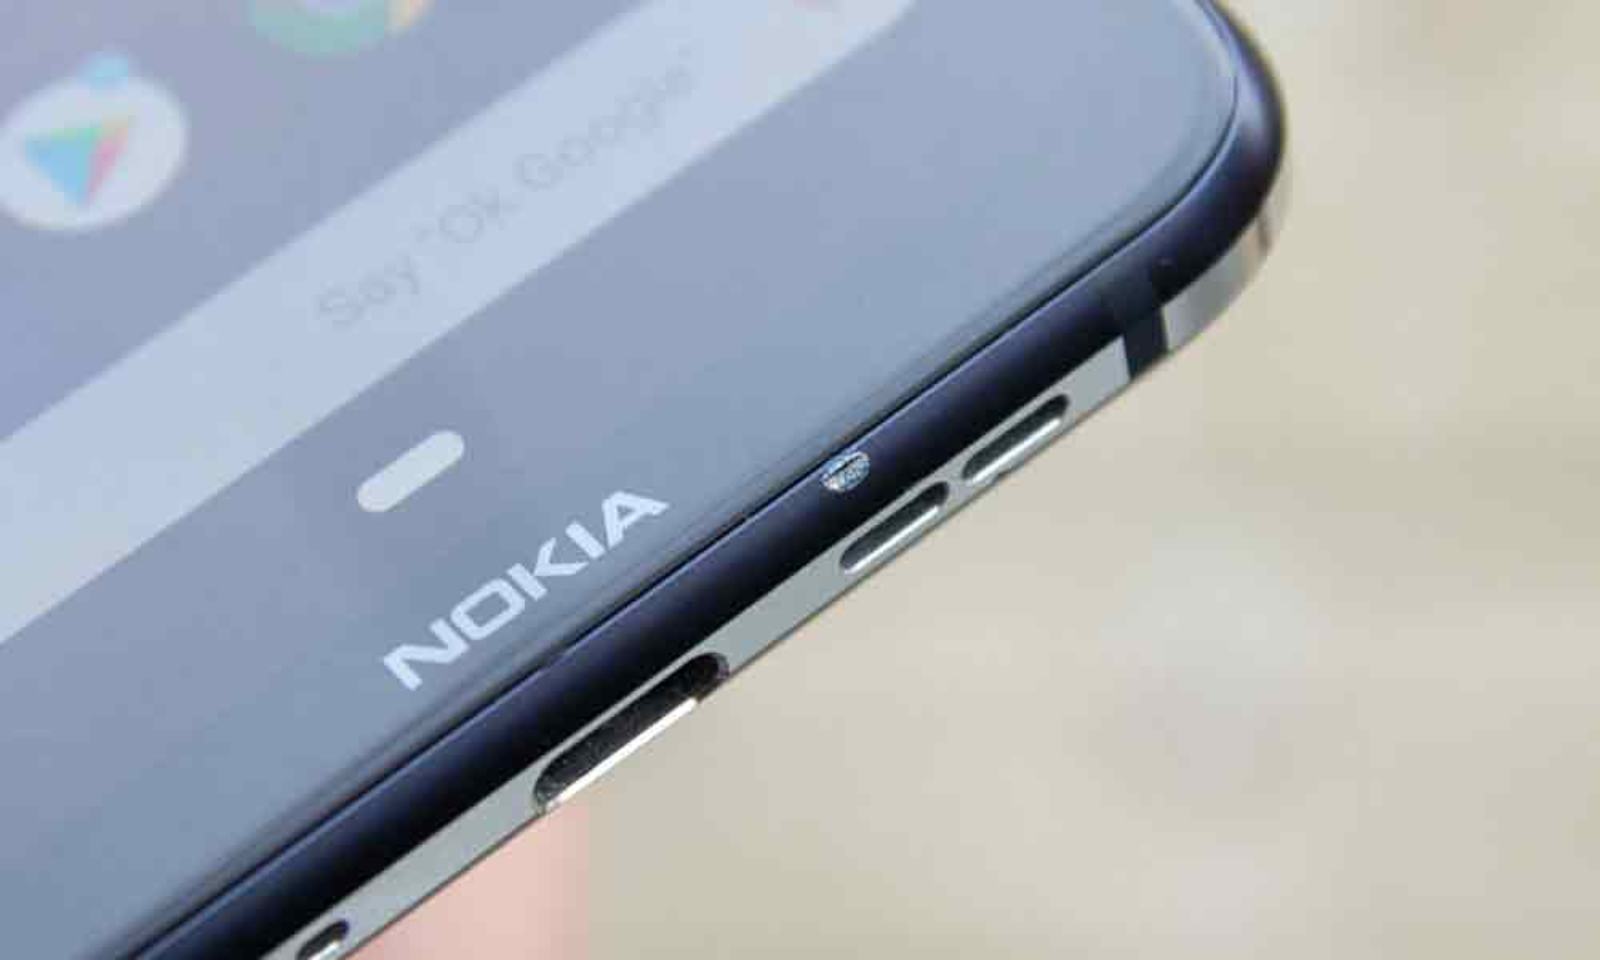 Nokia smartphones launching today